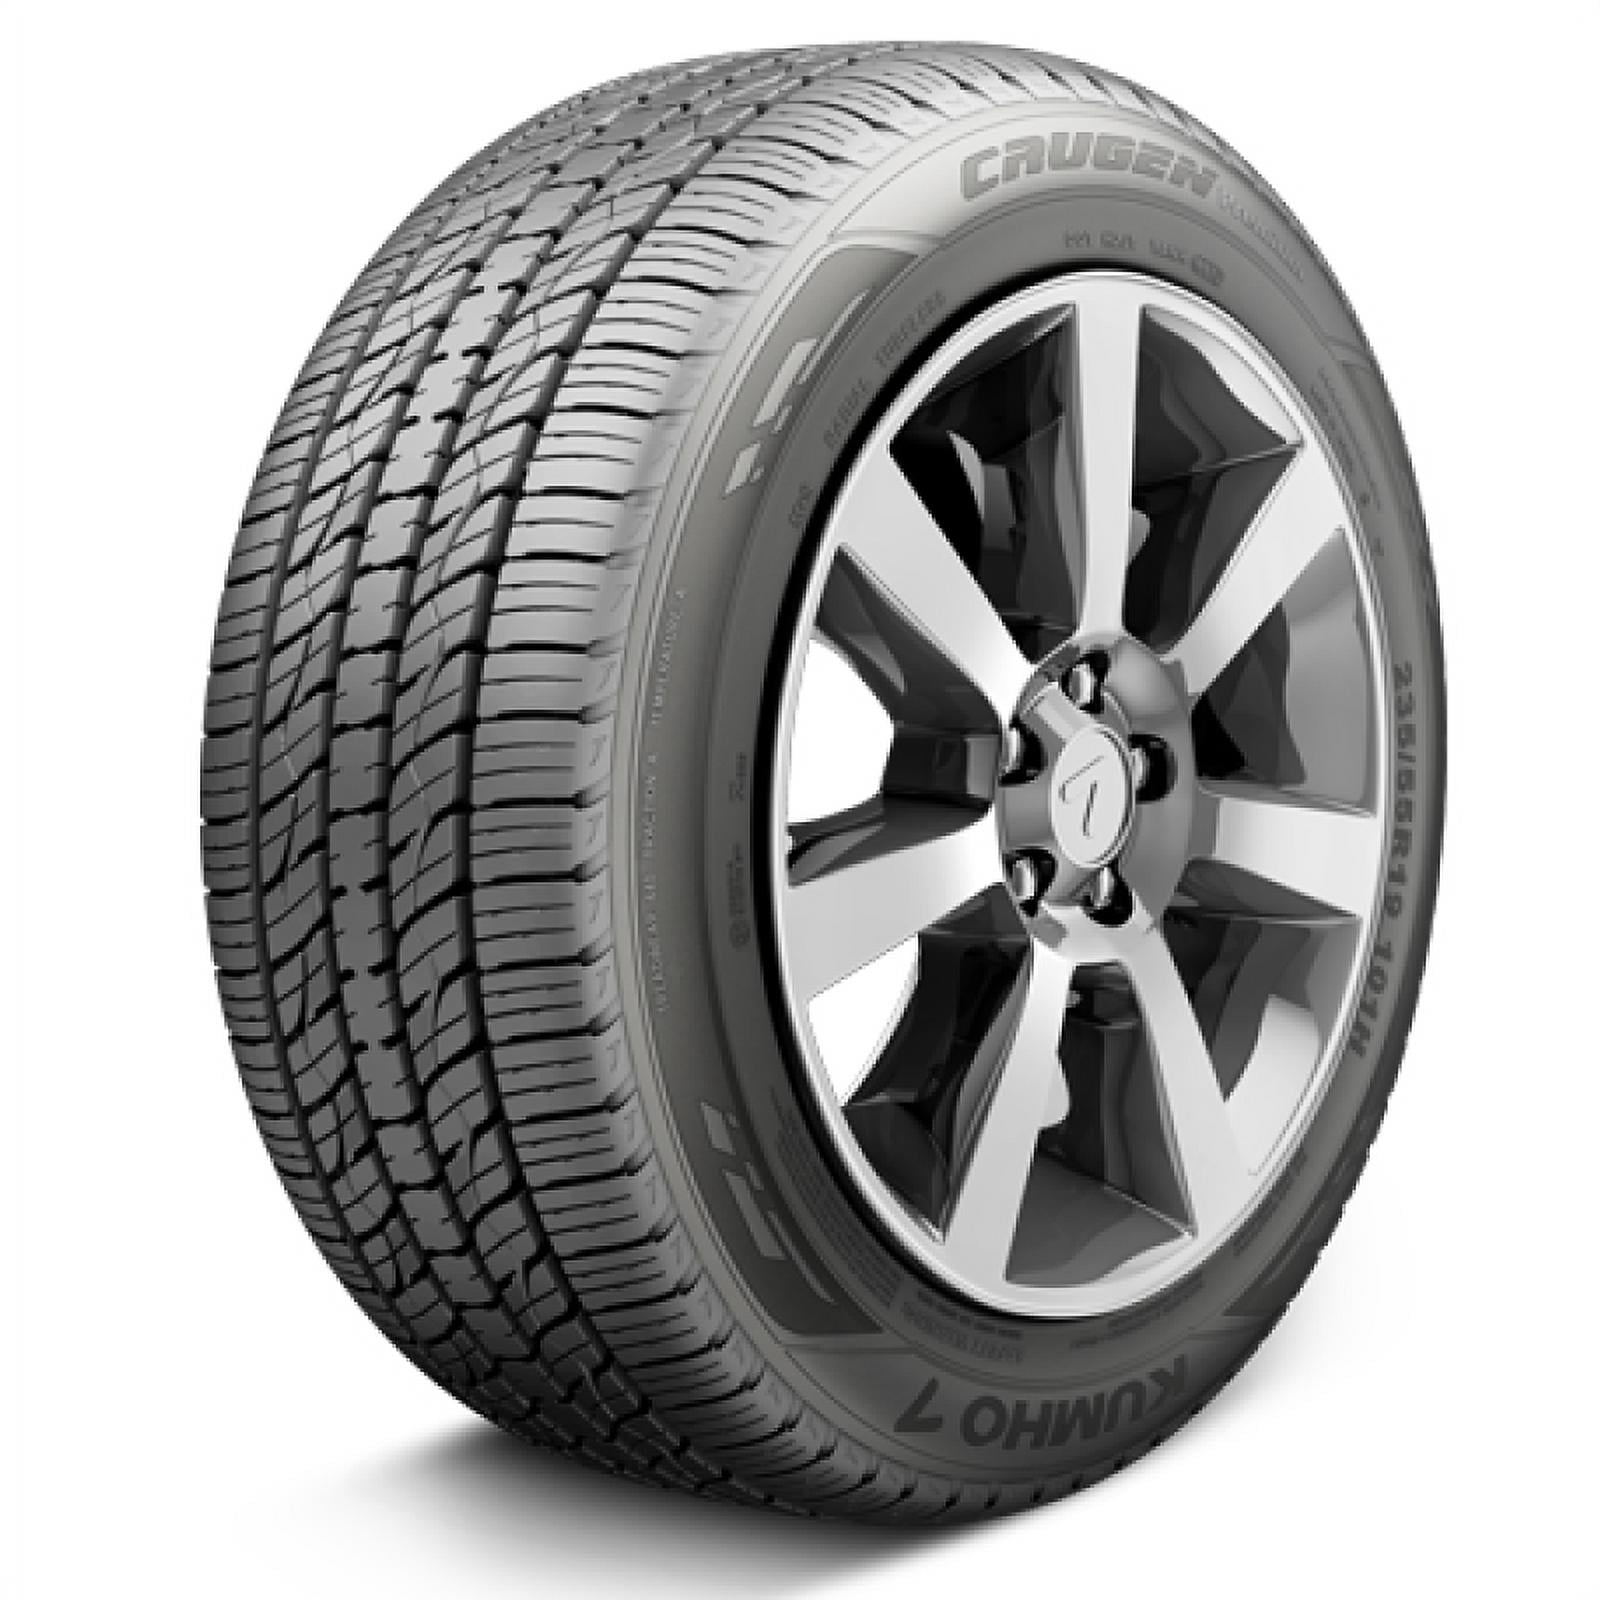 1 New Bridgestone Ecopia H/l 422 Plus 235/65r17 Tires 2356517 235 65 17 